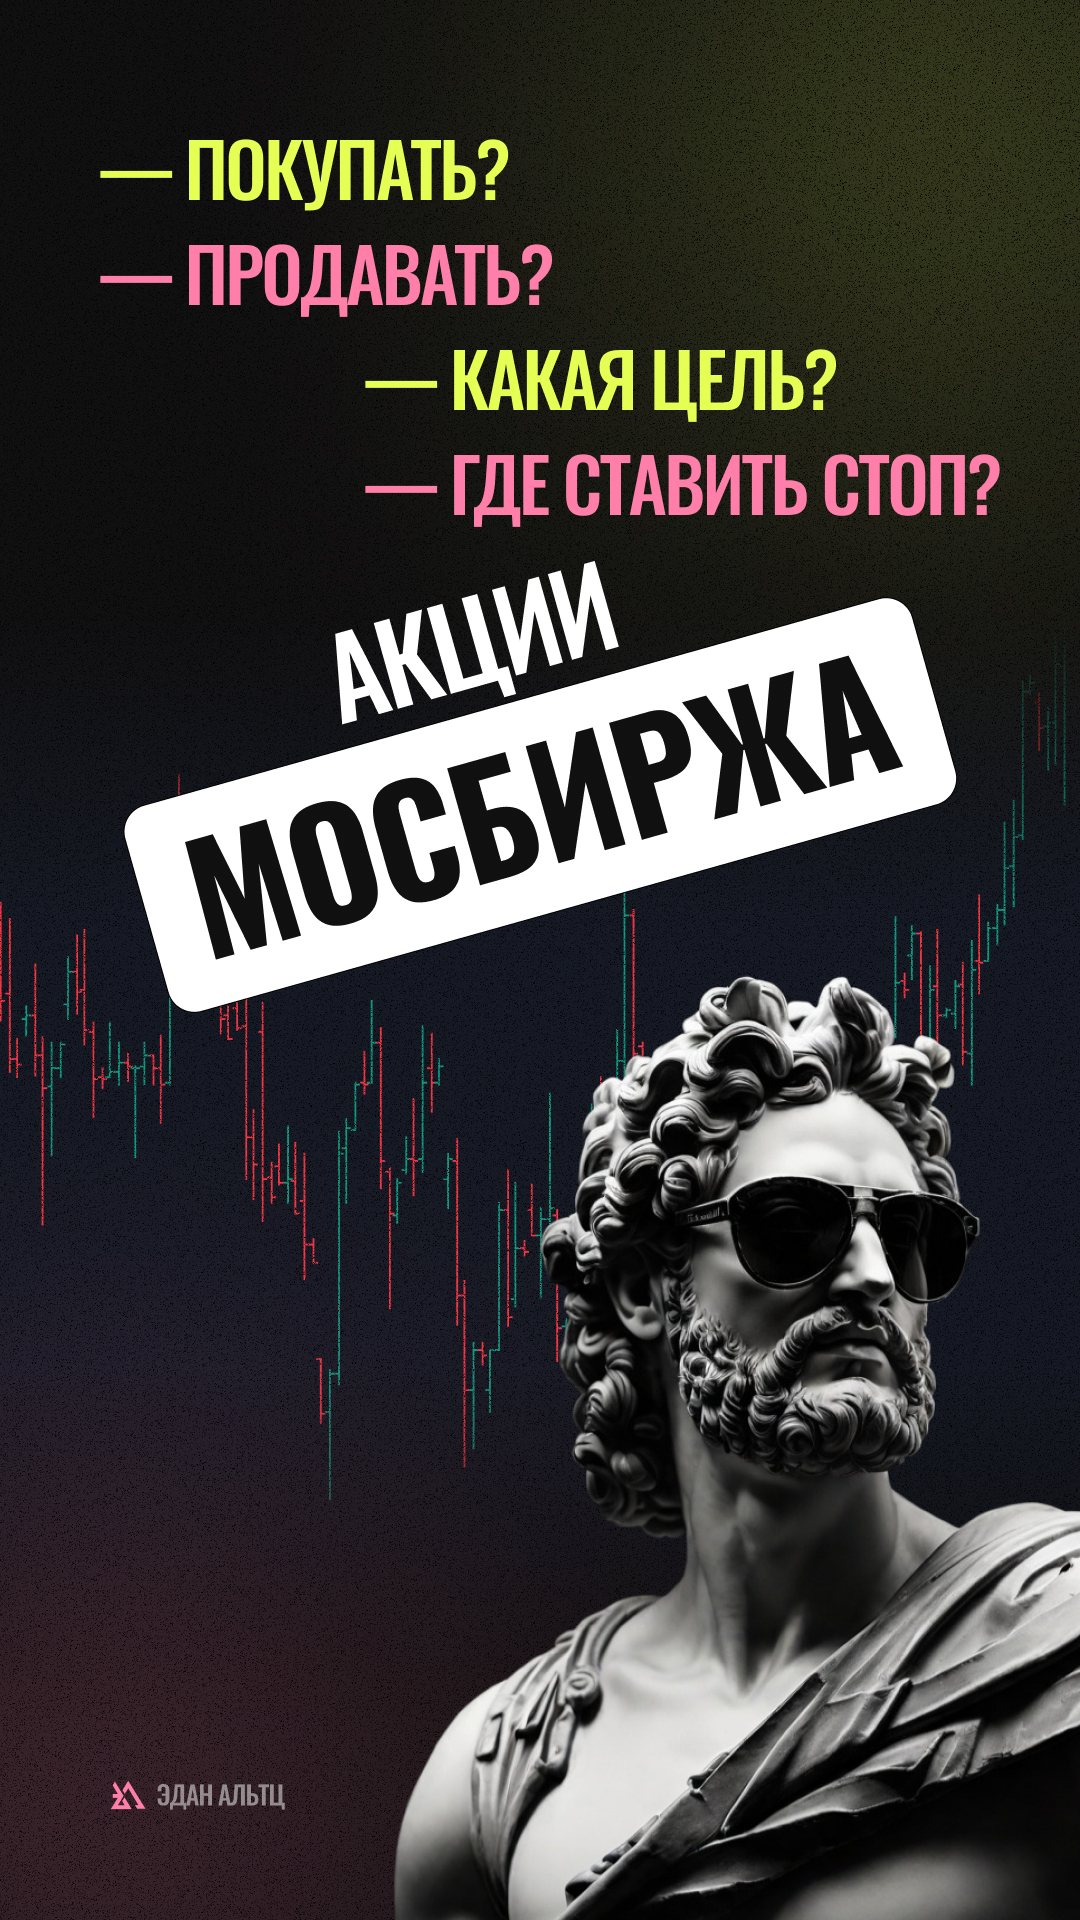 🔥 Акции #Мосбиржа #MOEX — идея \ цели \ стопы \ обзор